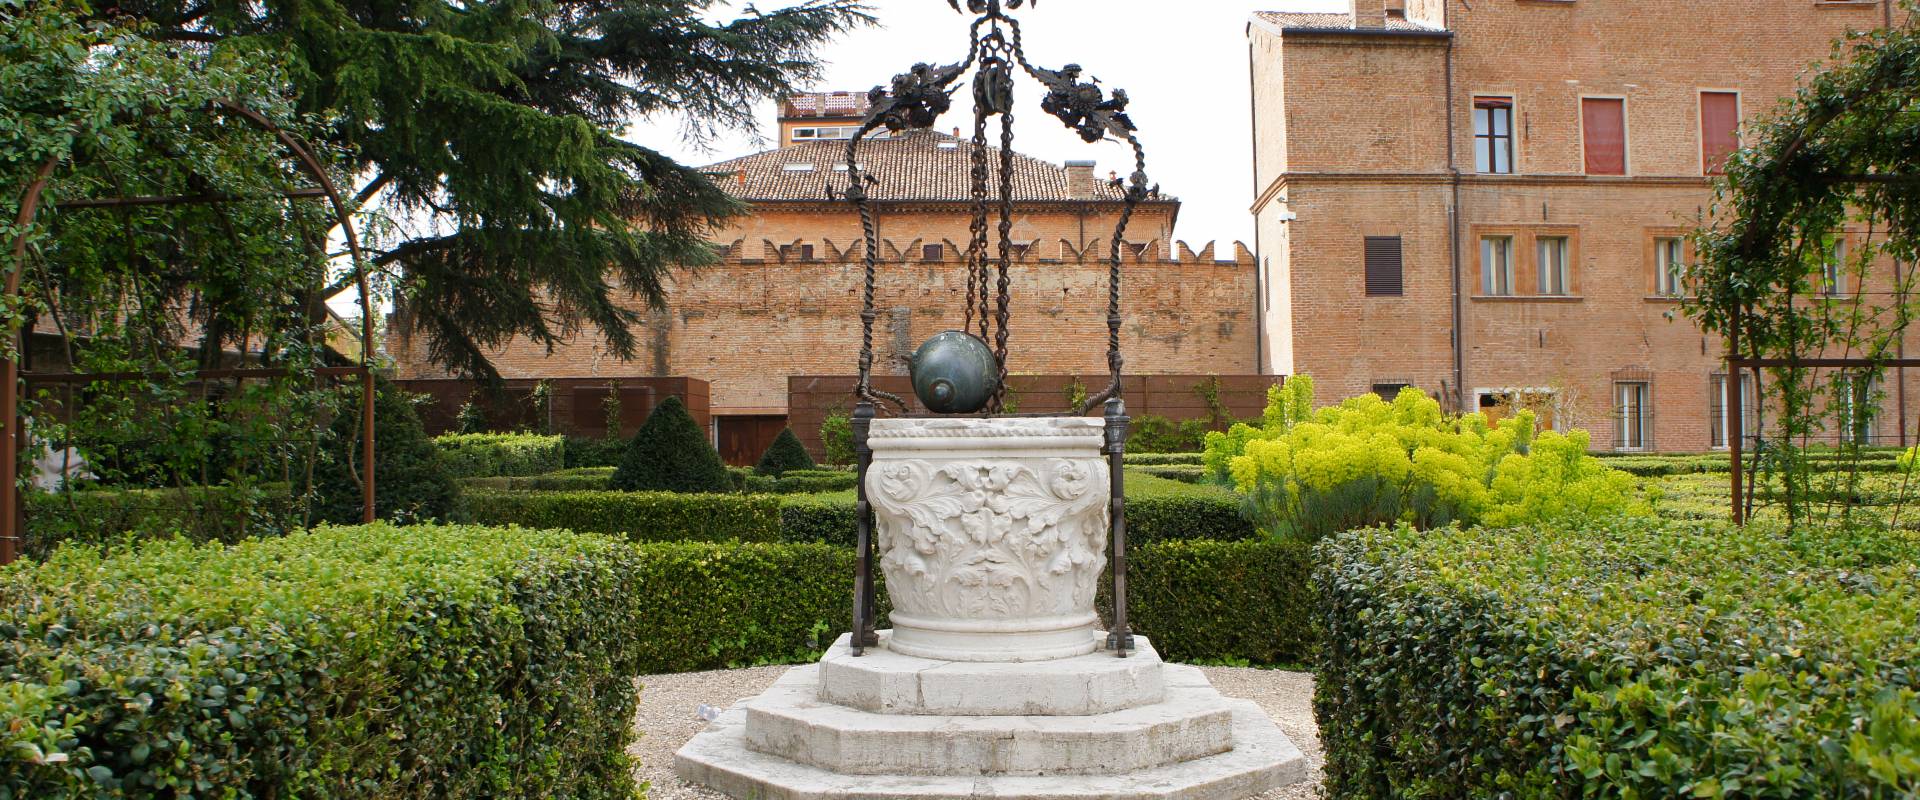 Palazzo Costabili detto di Ludovico il Moro - Pozzo del giardino photo by Andrea Comisi